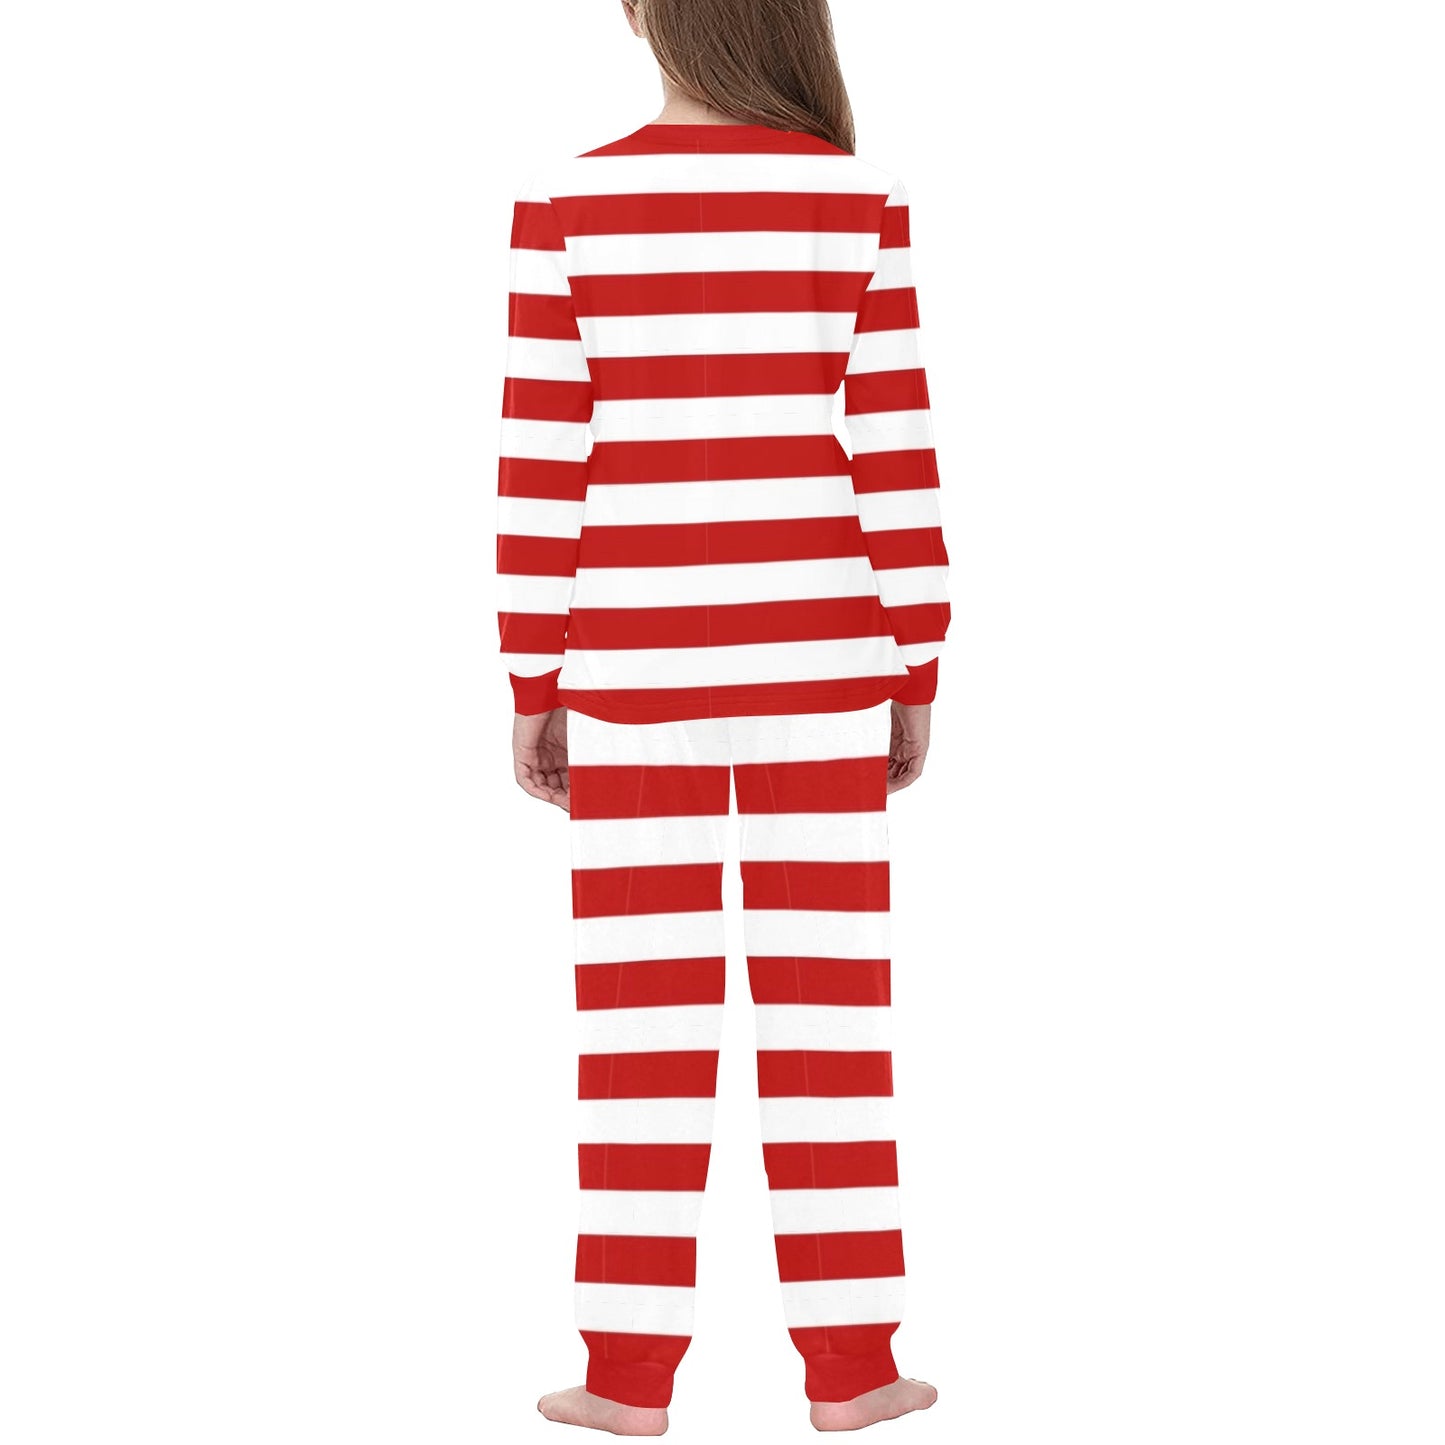 PSG Striped Soccer Pajamas • Soccer Christmas Gift • Festive Sleepwear for PSG Fans